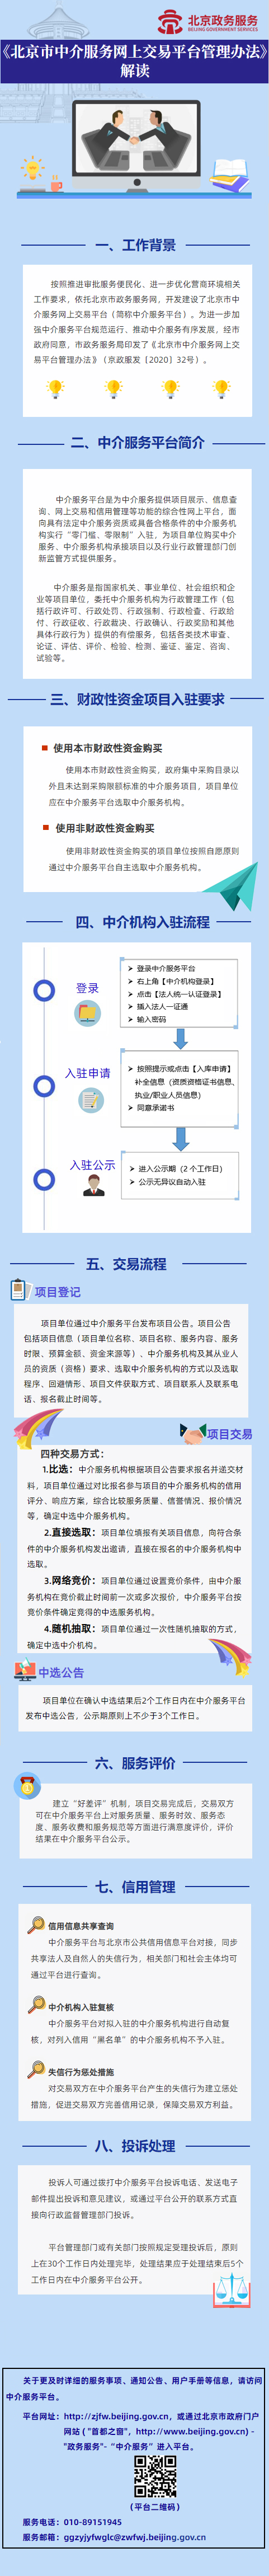 《北京市中介服务网上交易平台管理办法》图解.jpg